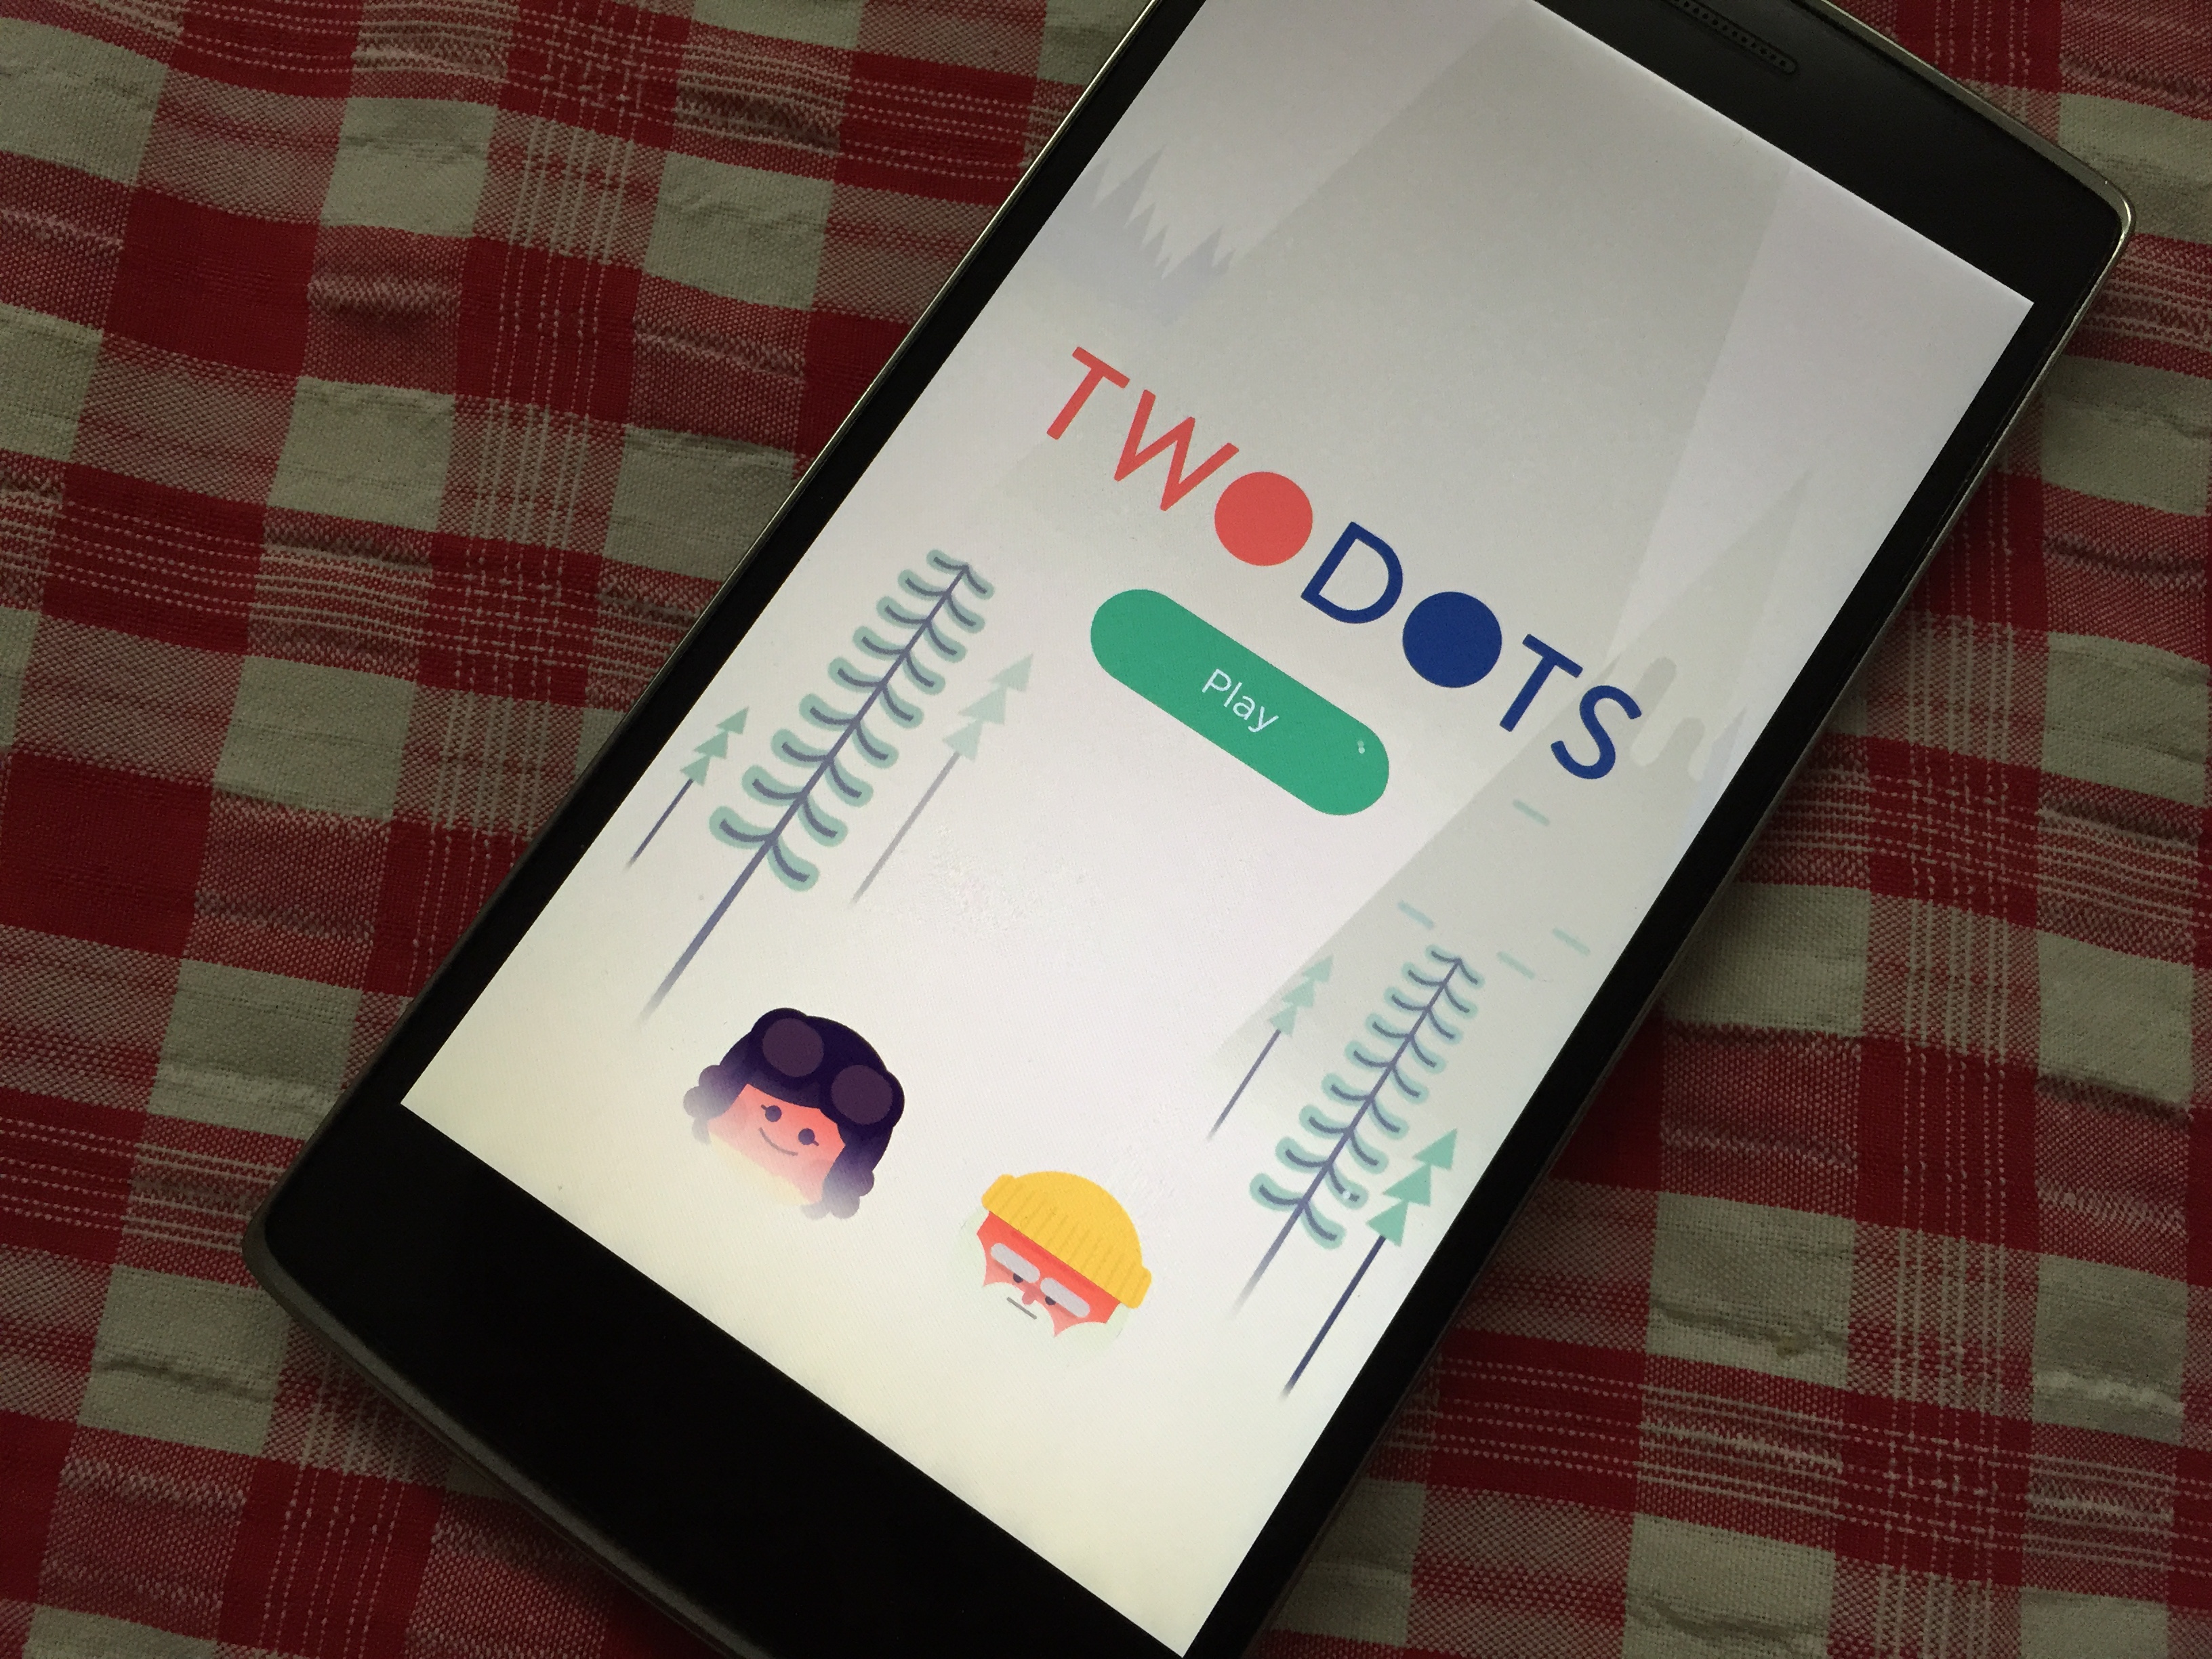 Twodots app